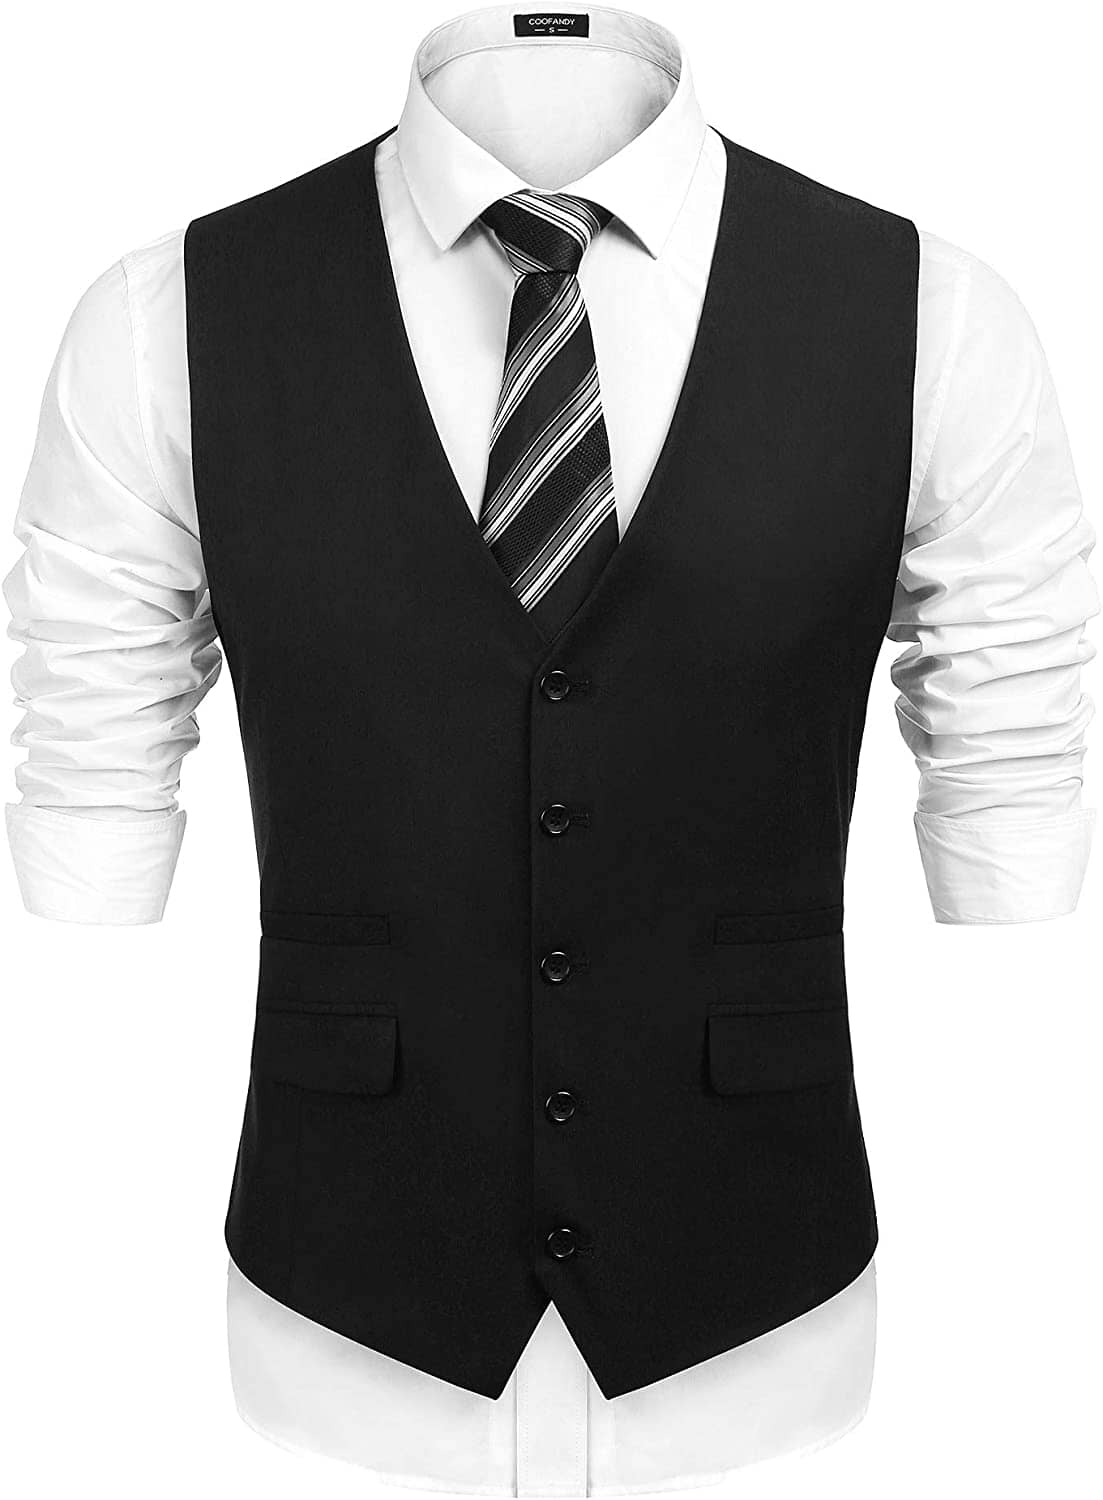 Slim Fit Business Suit Vest (US Only) Vest COOFANDY Store Black S 